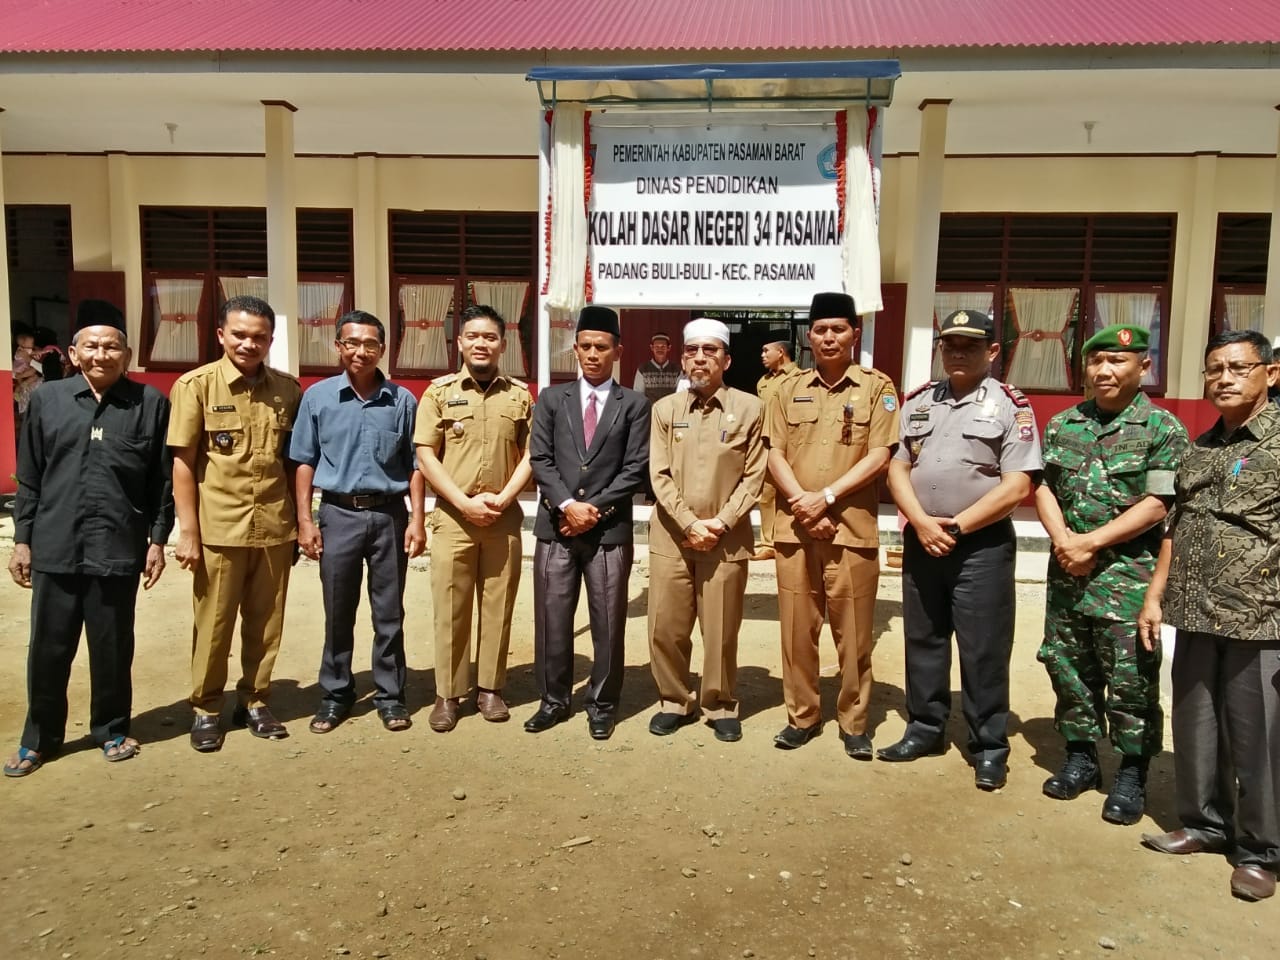 Bupati Pasaman Barat H.Syahiran (peci putih) meresmikan SD Negeri 34 Pasaman, Jorong Padang Buli-Buli Aur Kuning, Kecamatan Pasaman, Selasa (24/7/2018).